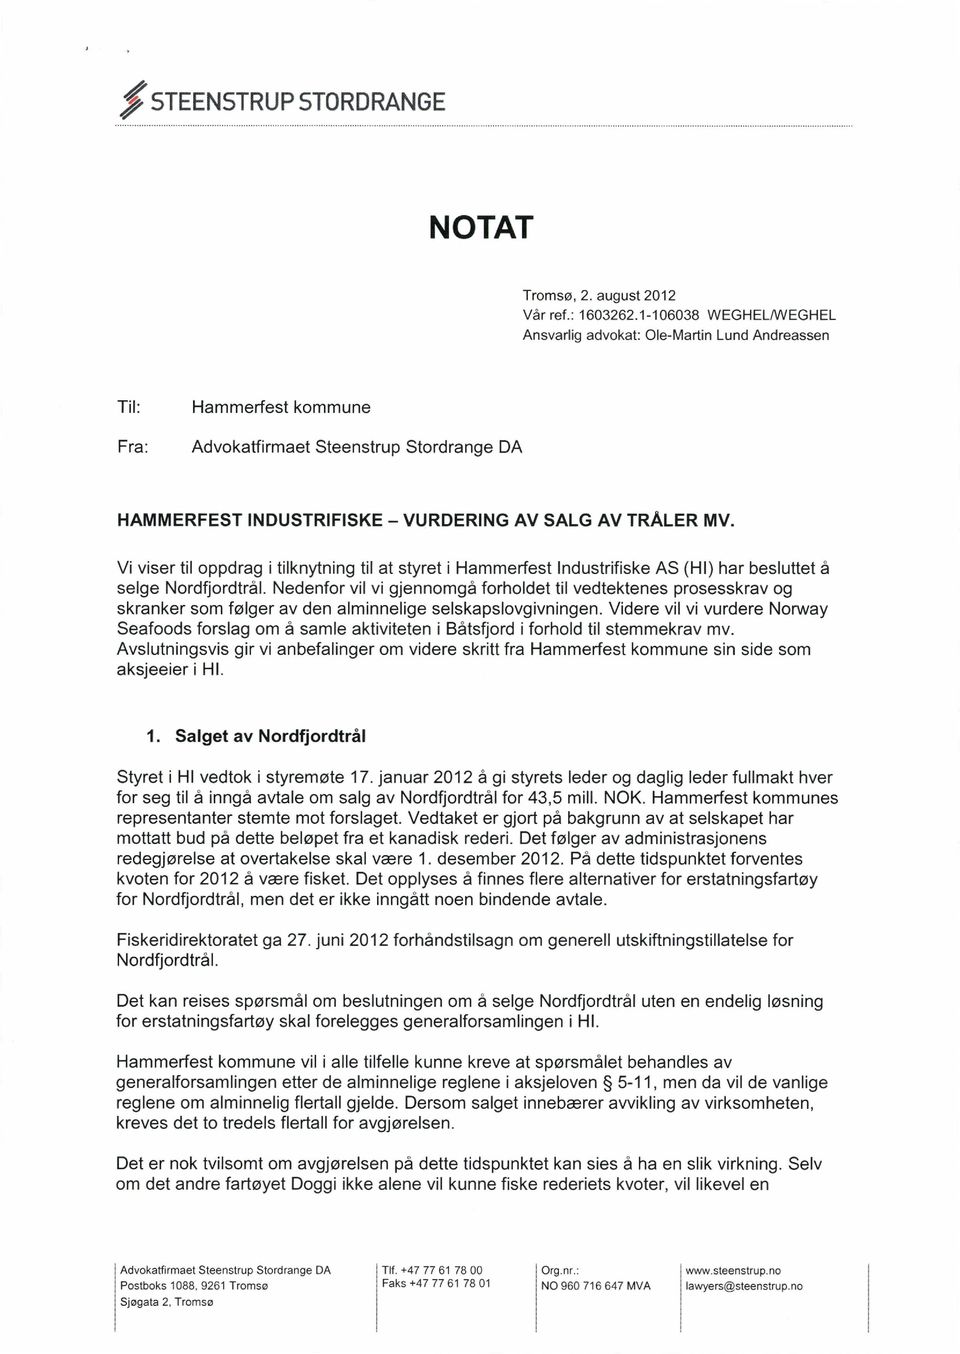 Vi viser til oppdrag i tilknytning til at styret i Hammerfest Industrifiske AS (HI) har besluttet å selge Nordfjordtrål.